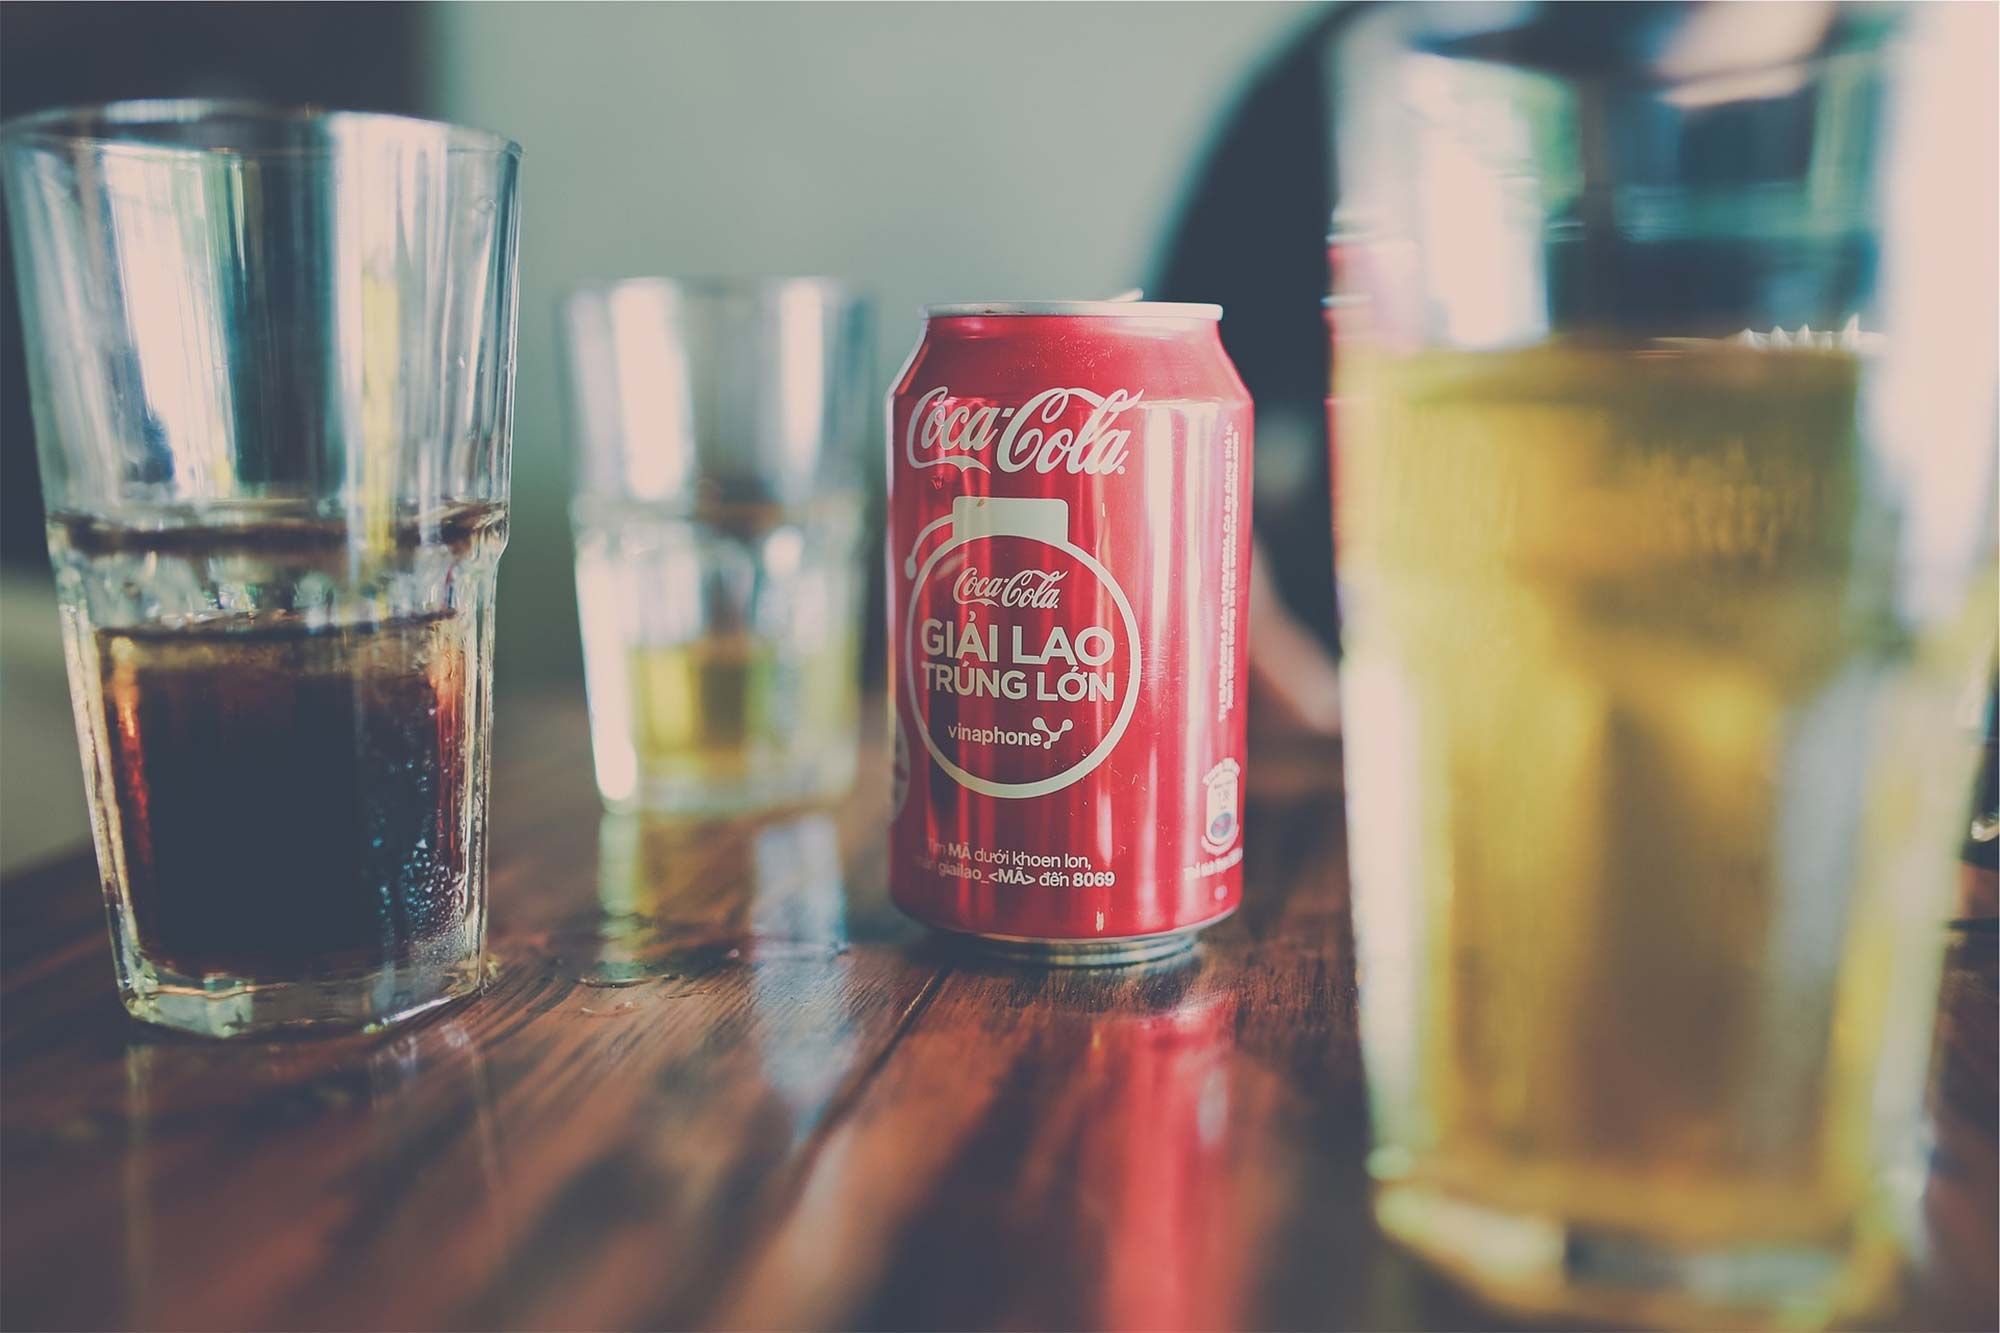 Coca-Cola вперше за 125 років випустить алкогольний напій